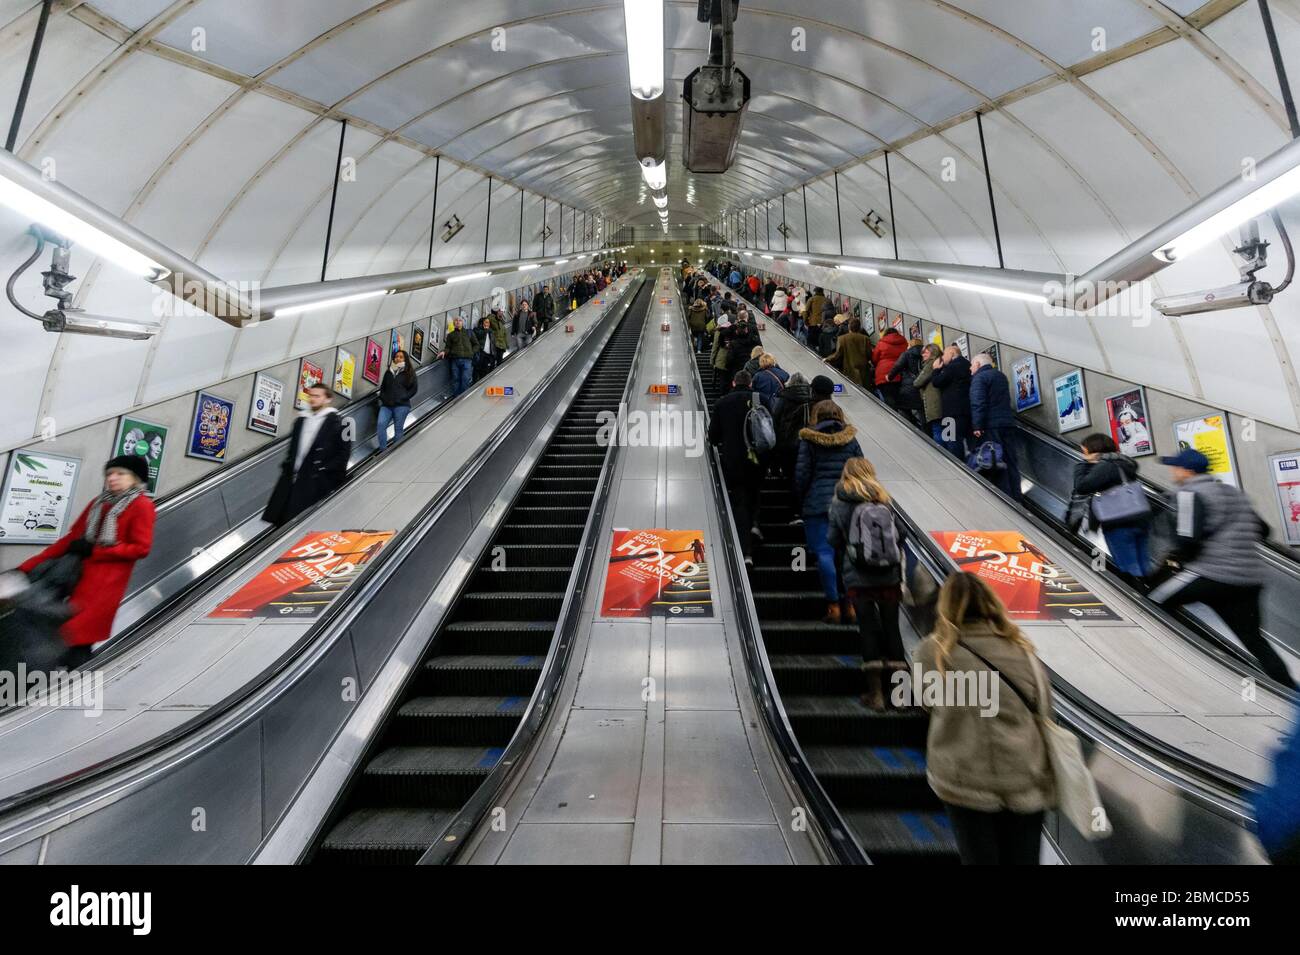 Personnes sur les escaliers mécaniques dans la station de métro Holborn, Londres Angleterre Royaume-Uni Banque D'Images